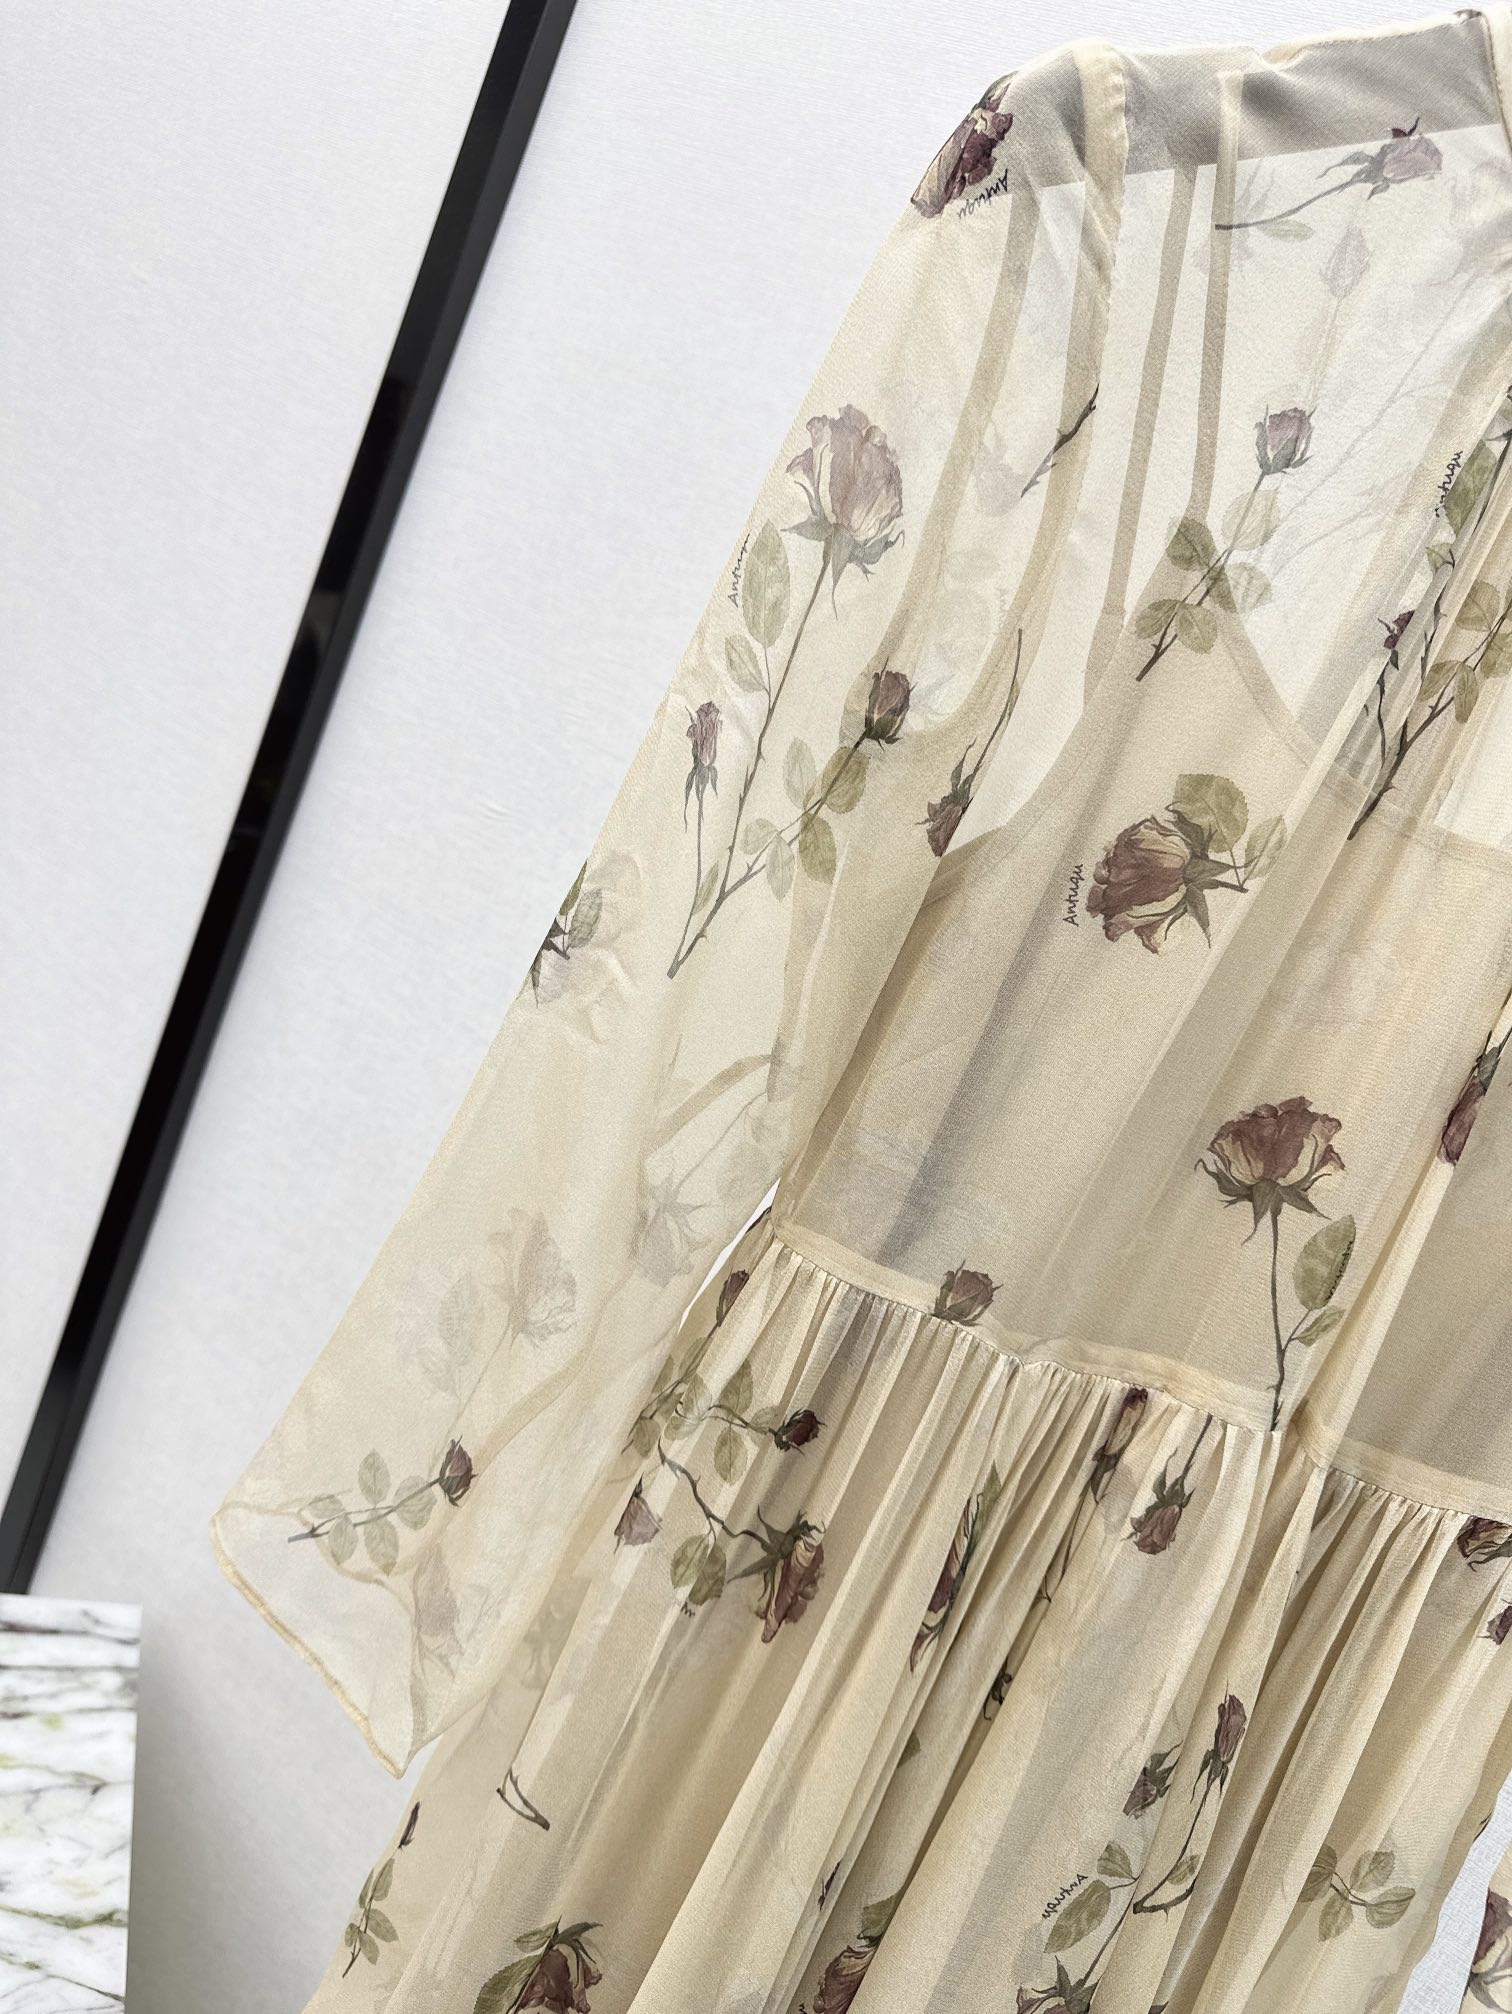 时髦小众设计24Ss春夏最新款高级色调真丝连衣裙百分百真丝双绉面料舒适怡人的唯美飘逸低调奢华气质优雅斗篷